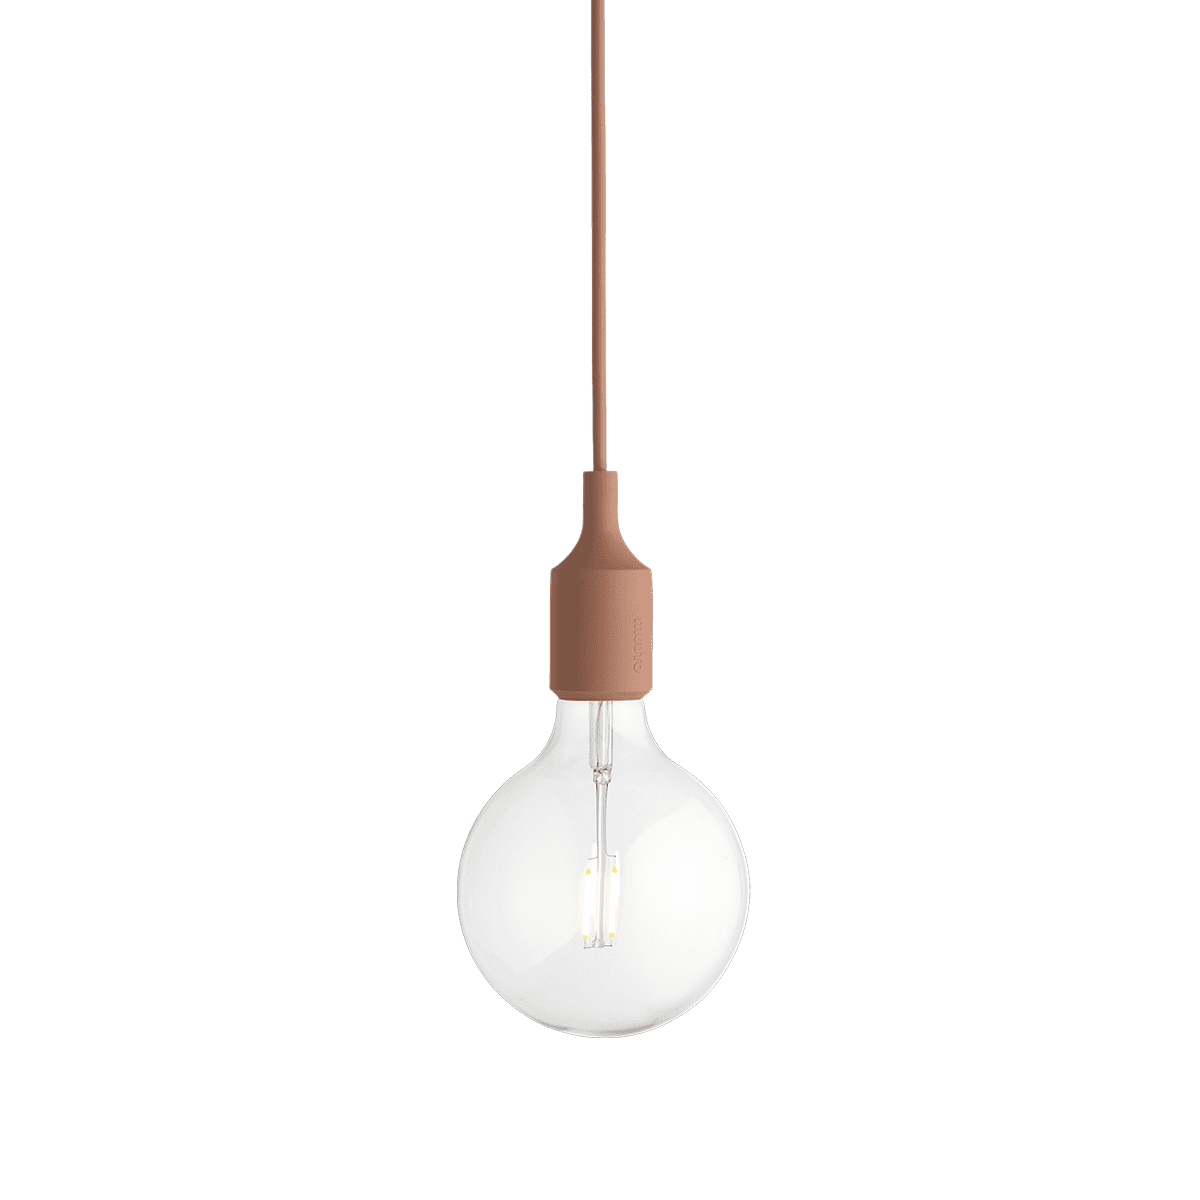 Hanging lamp E27 - Terracotta - Muuto